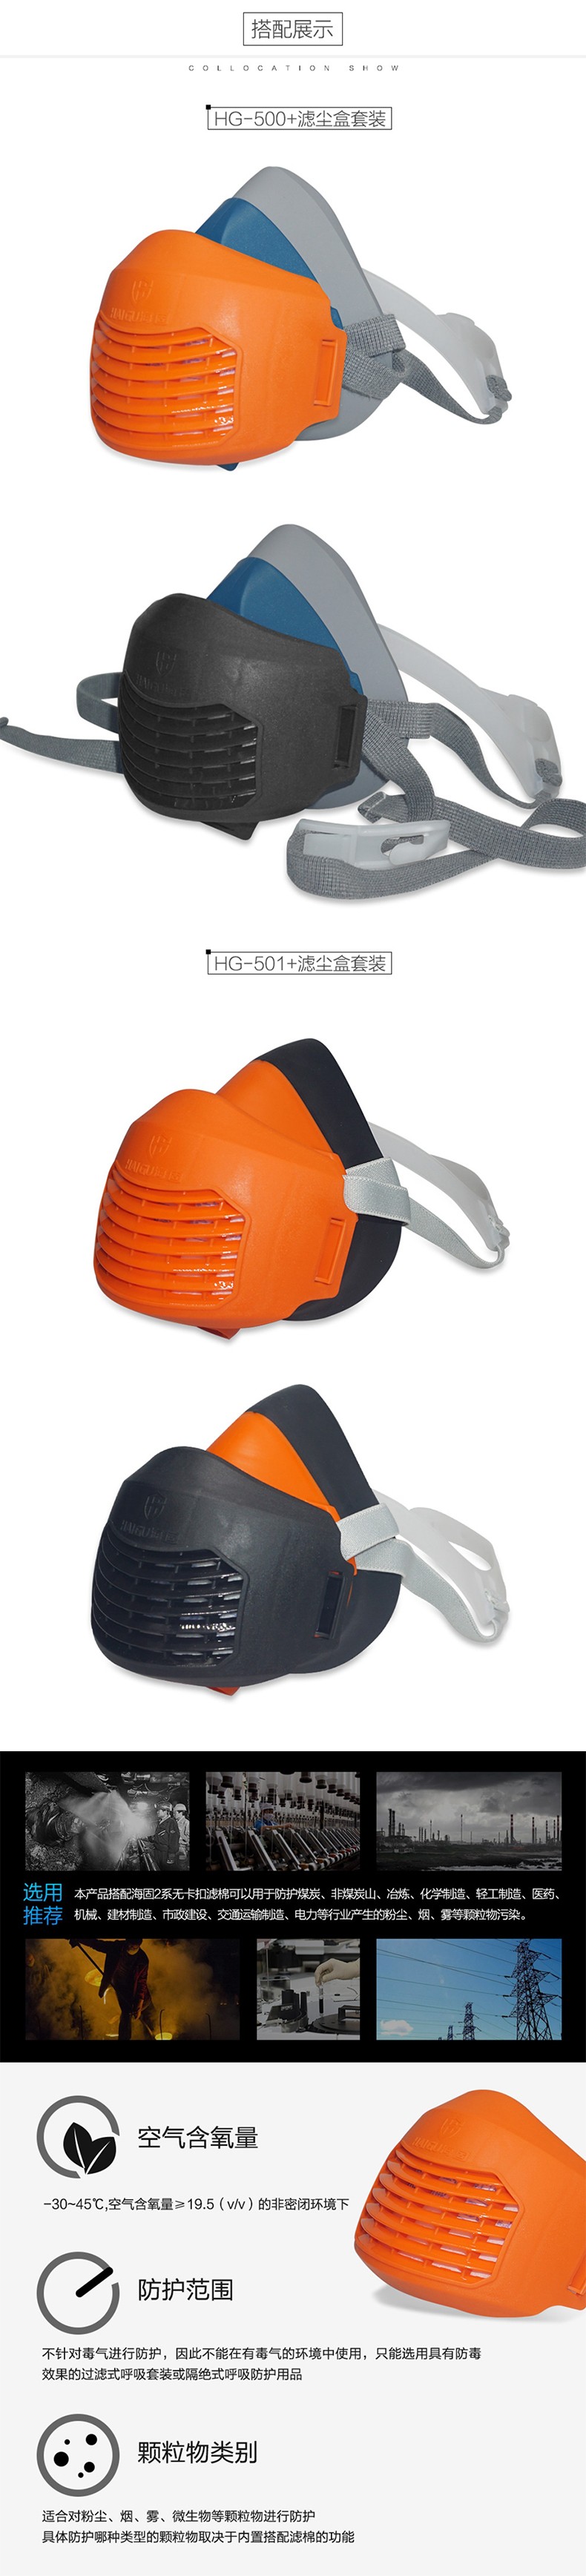 海固HG-500/N5095防毒防尘面具套装图片2